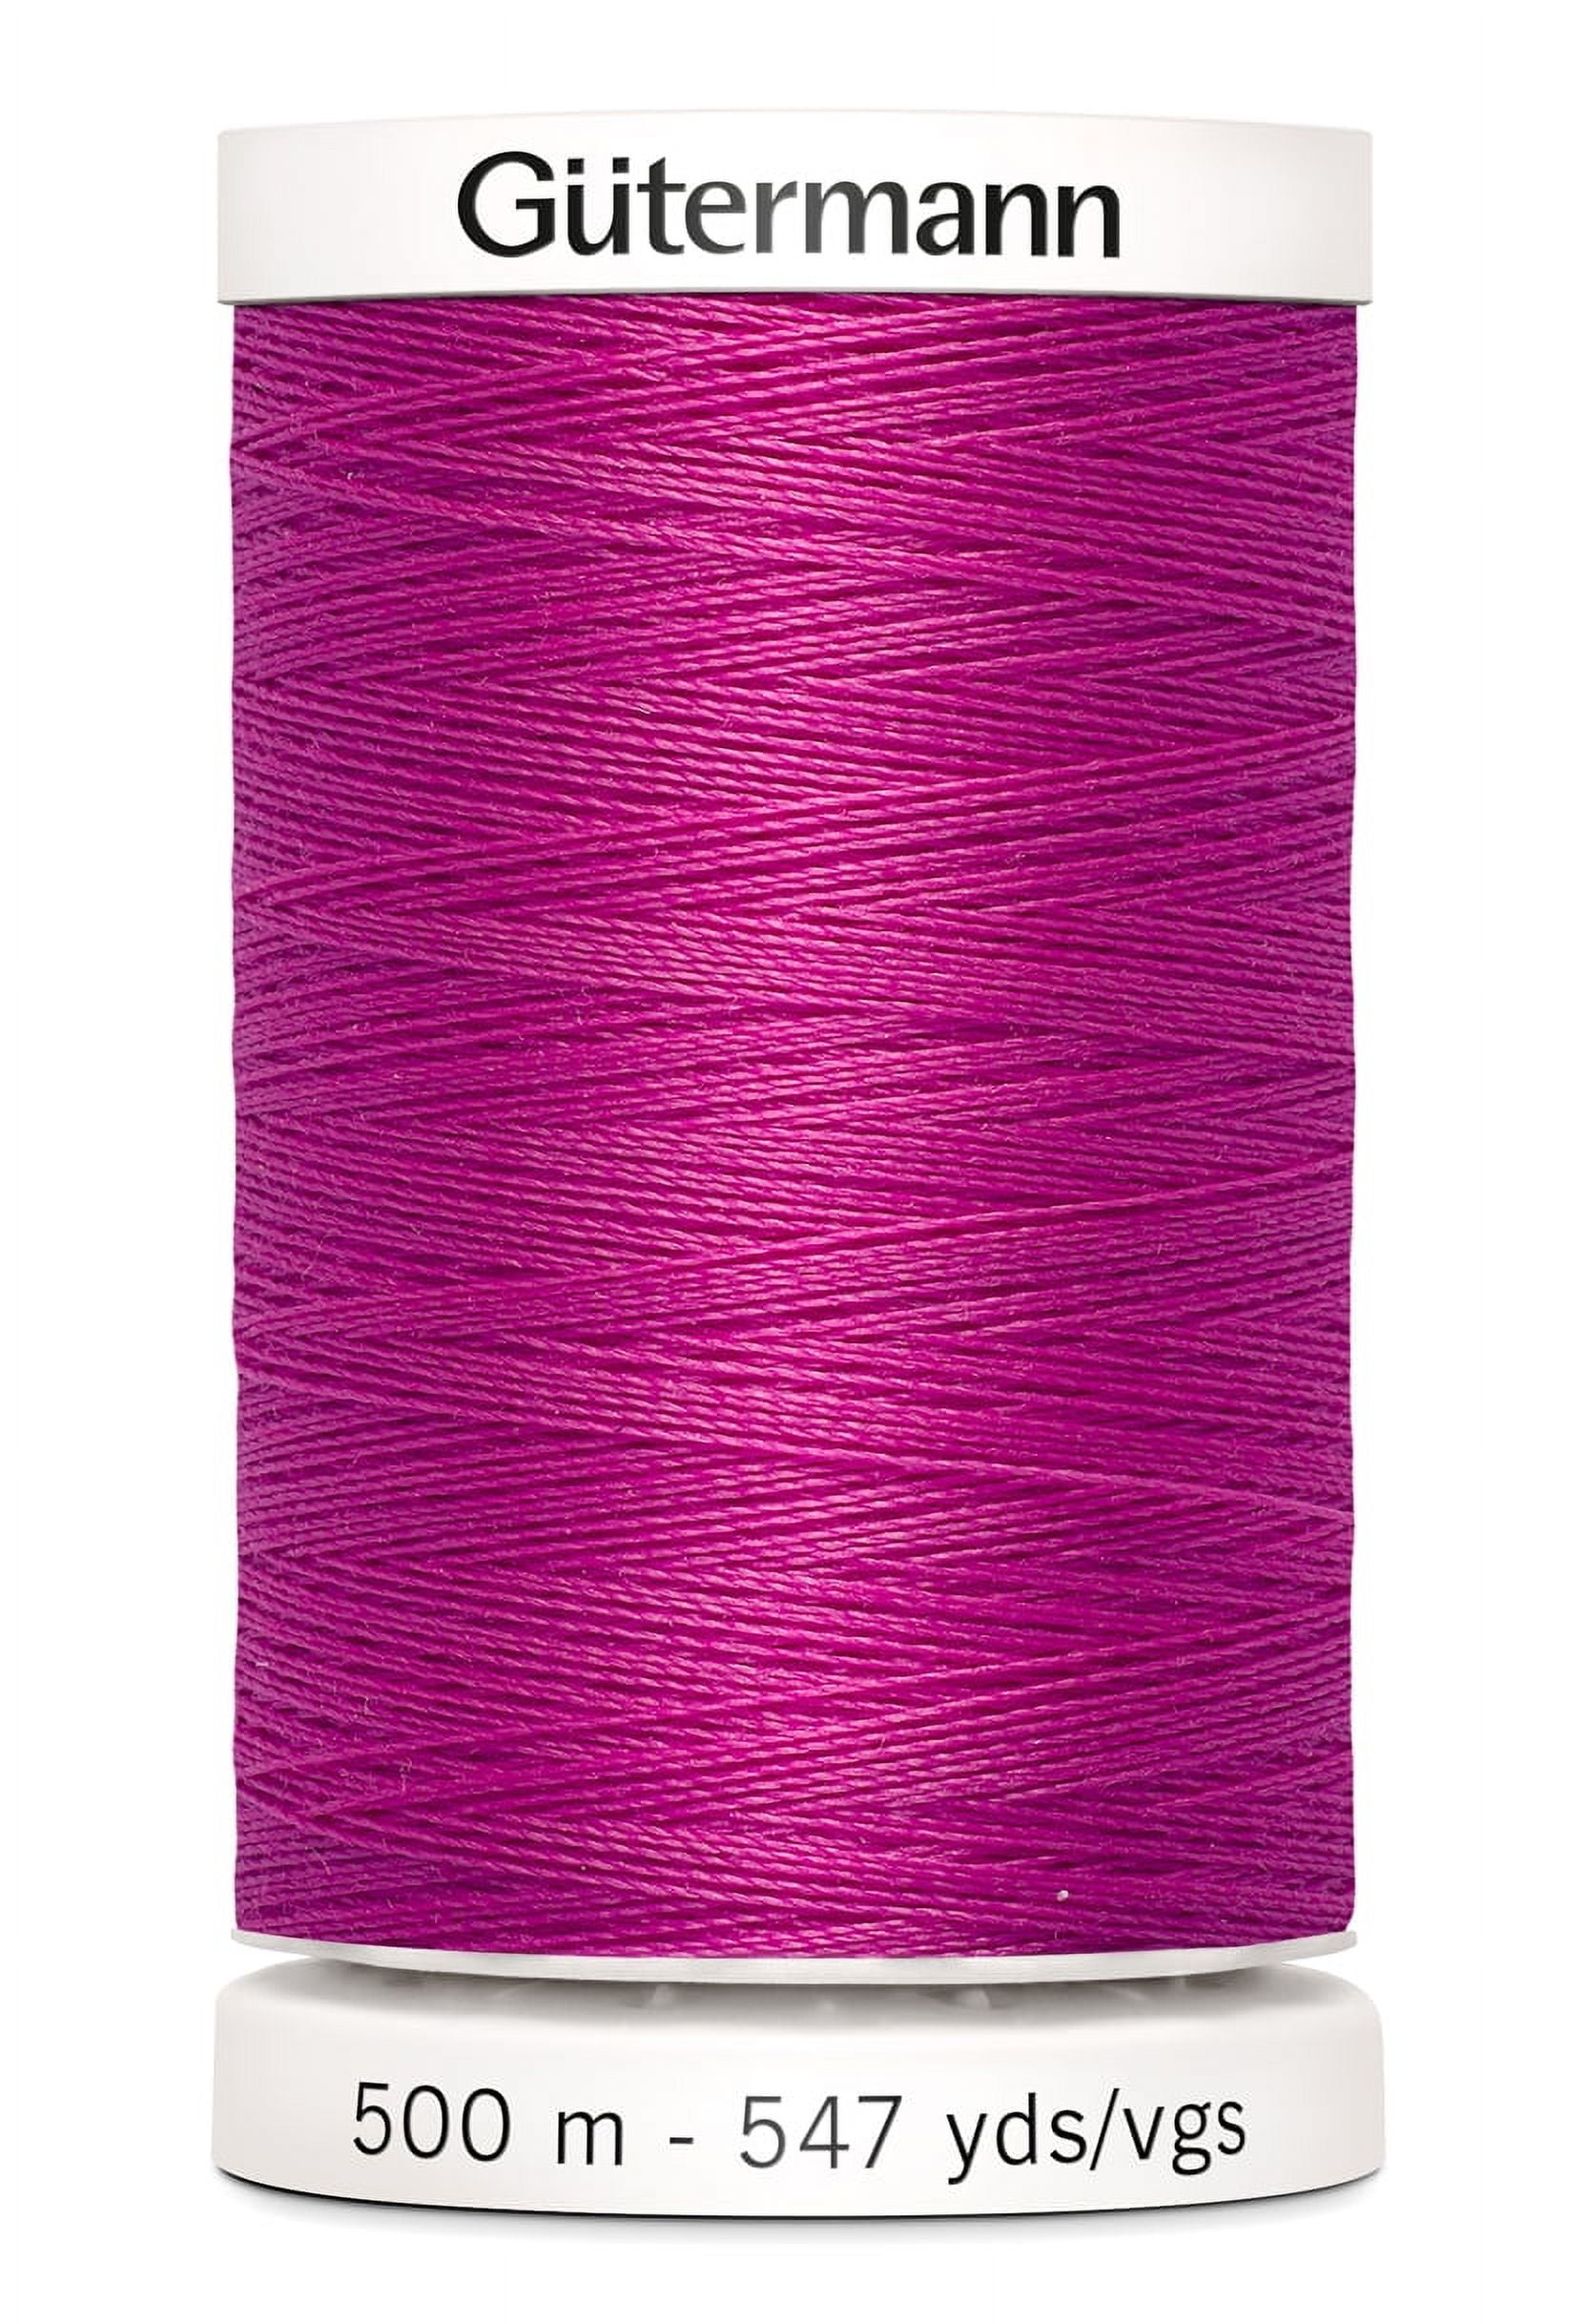 Gütermann Sew-All Thread - #520 Wheat